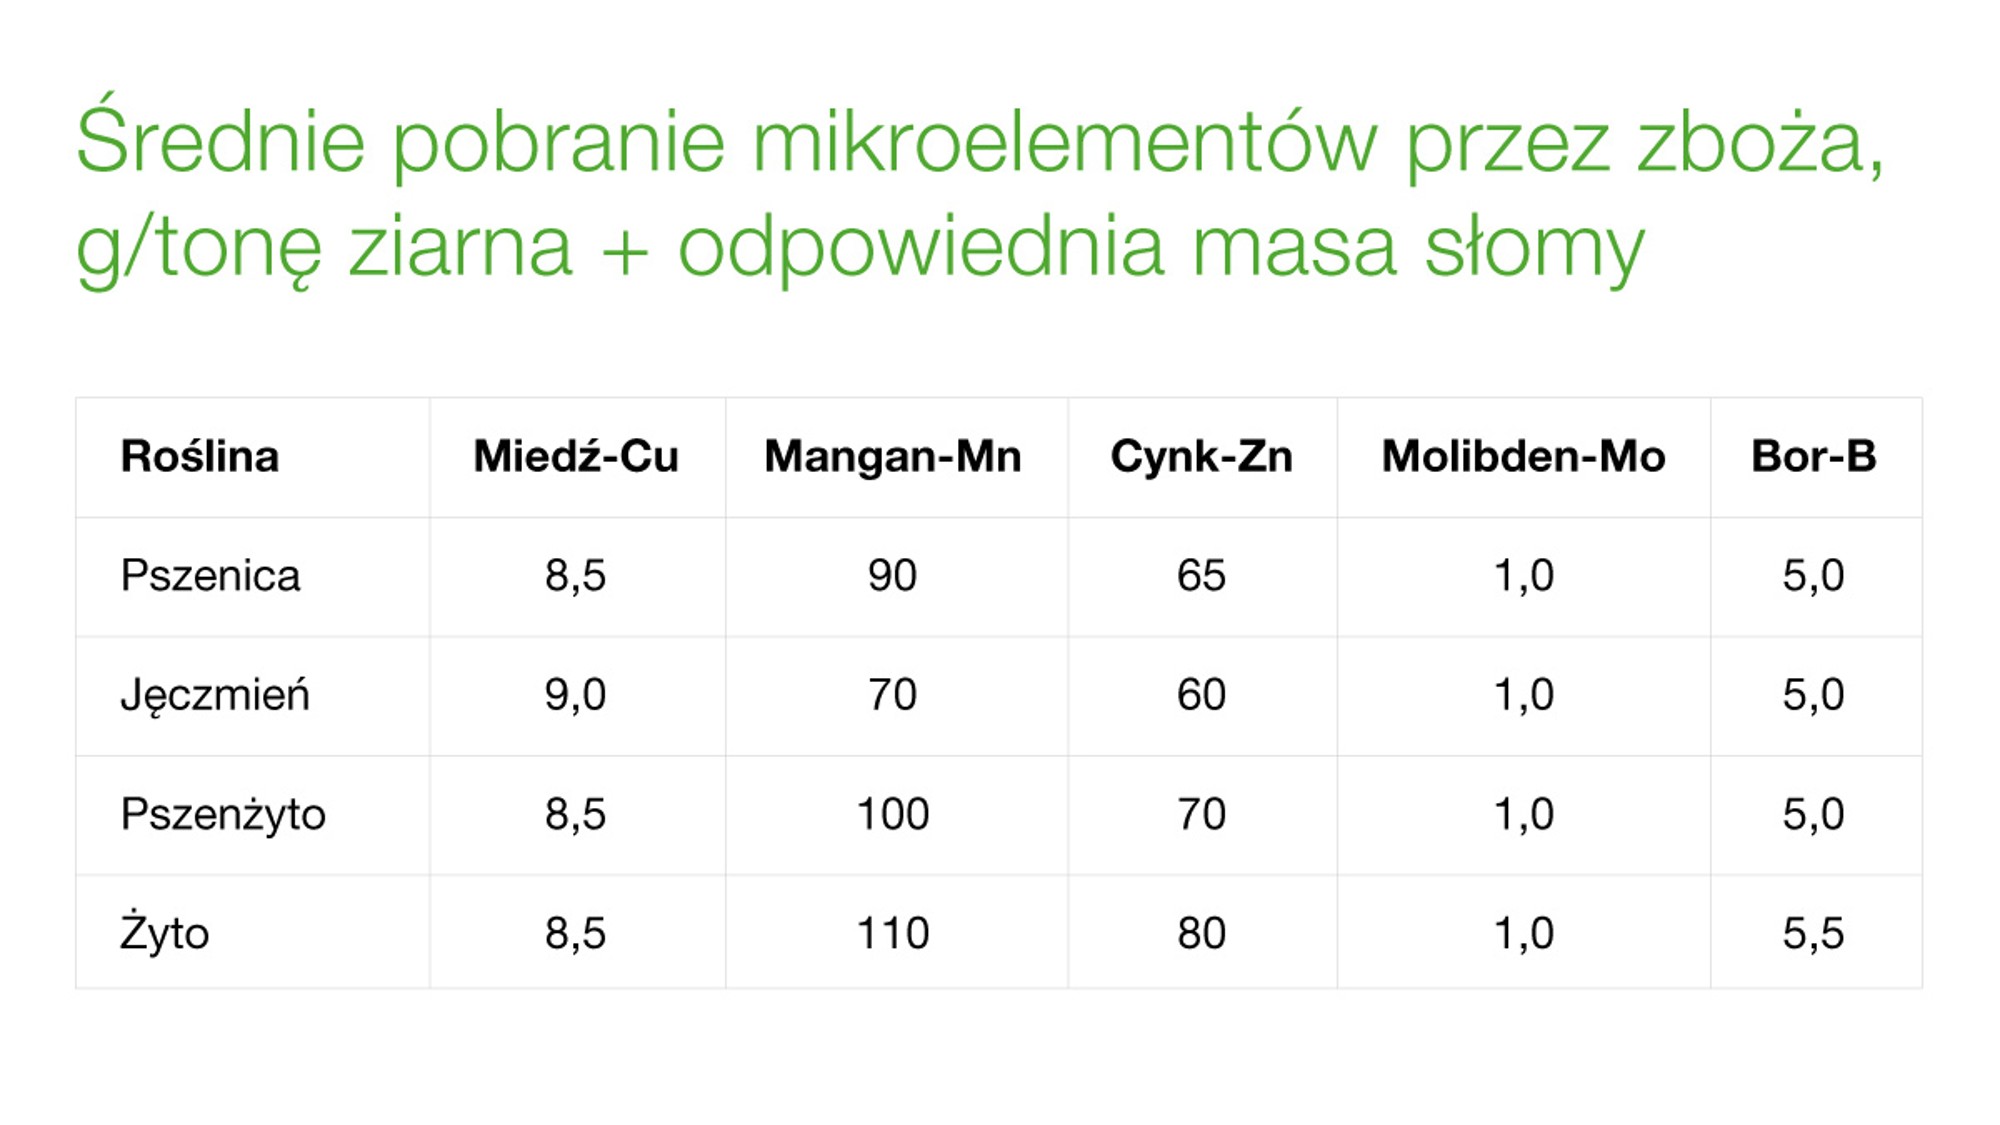 Średnie pobranie mikroelementów przez zboża, g/tonę ziarna + odpowiednia masa słomy